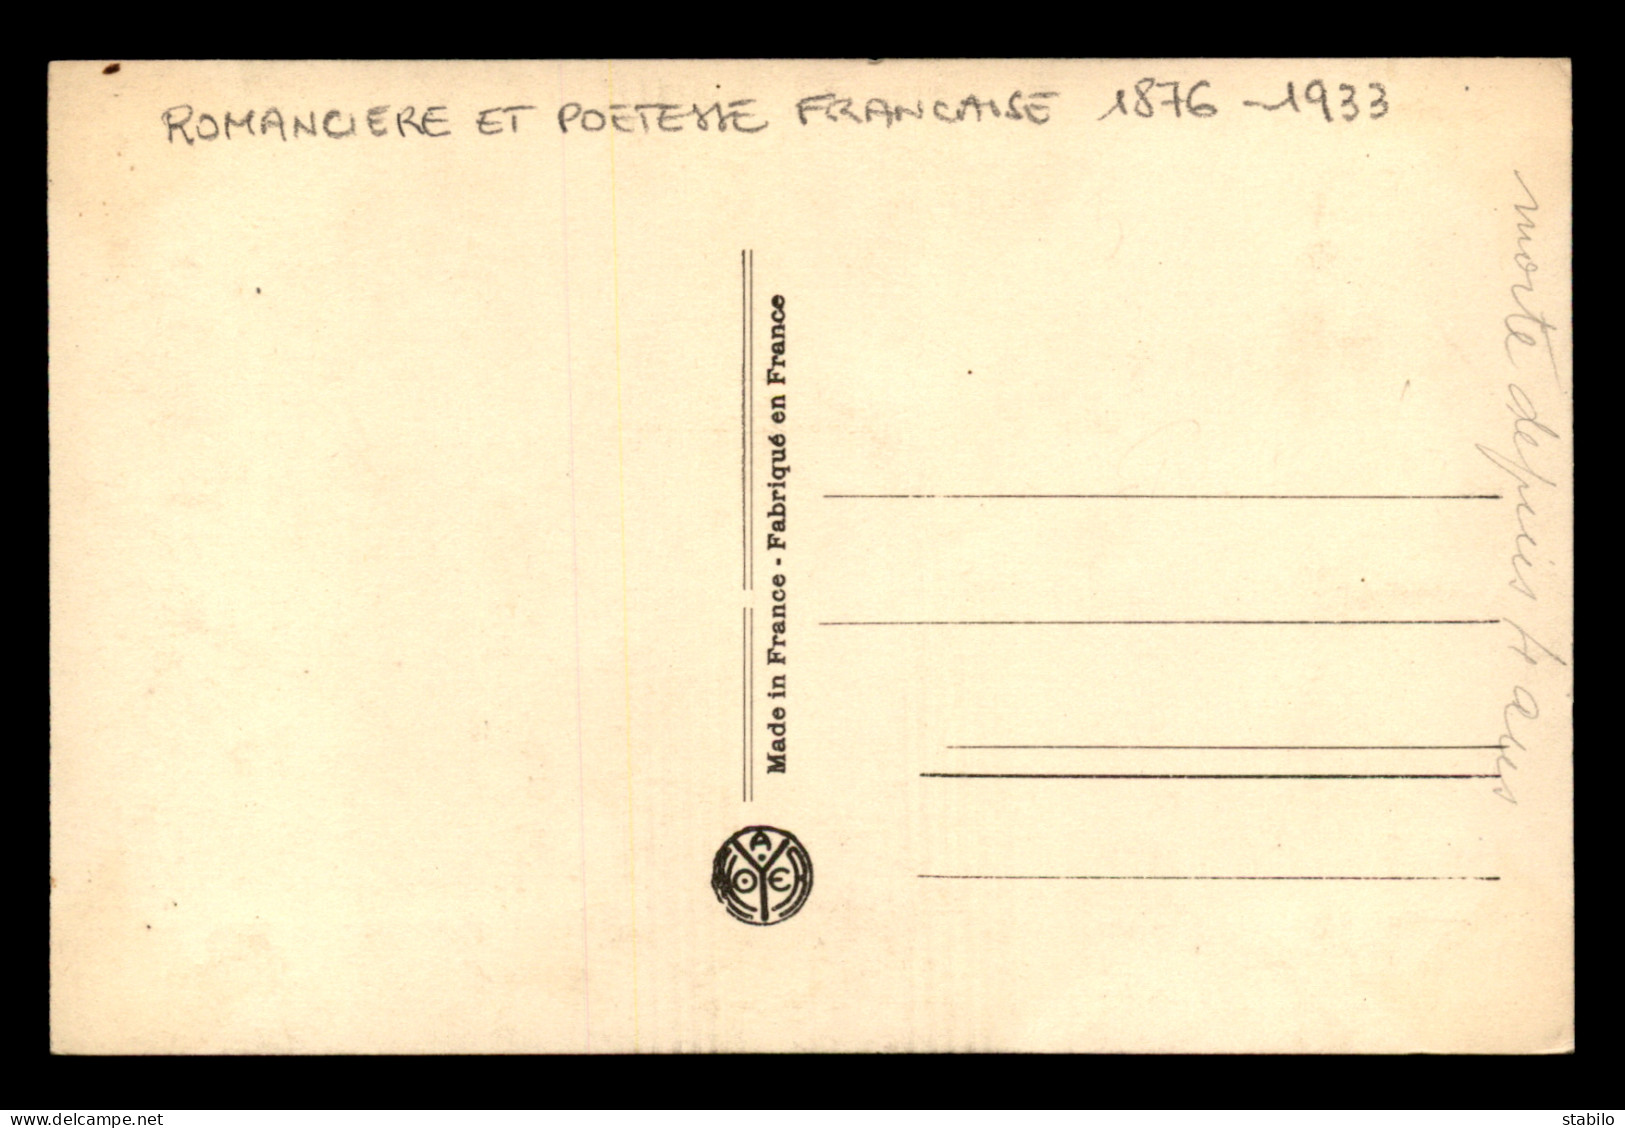 ECRIVAINS - COMTESSE DE NOAILLES (1876-1933)  ROMANCIERE ET POETESSE FRANCAISE - Schriftsteller